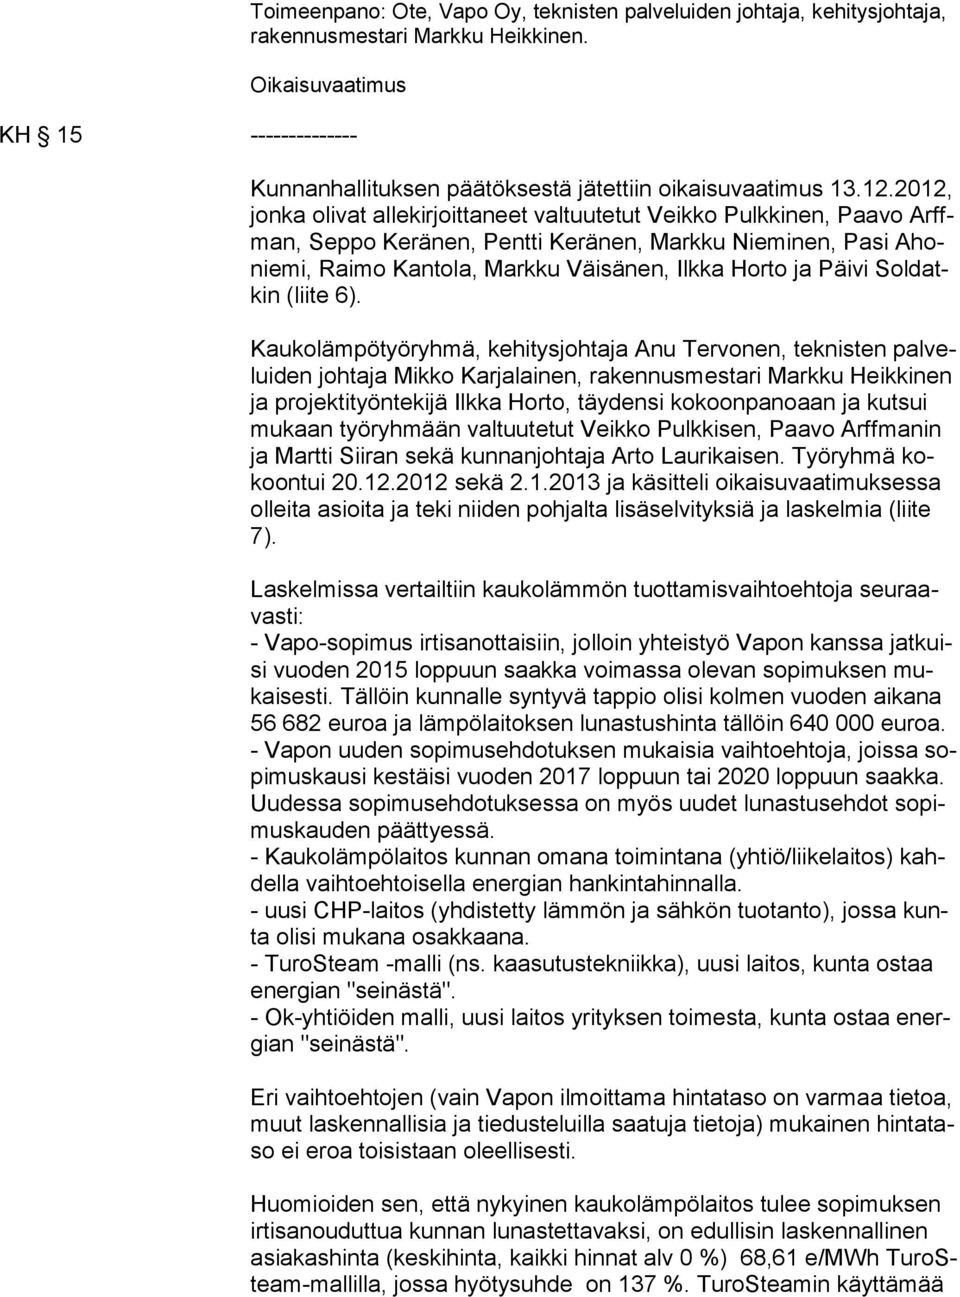 2012, jon ka olivat allekirjoittaneet valtuutetut Veikko Pulkkinen, Paavo Arffman, Seppo Keränen, Pentti Keränen, Markku Nieminen, Pasi Ahonie mi, Raimo Kantola, Markku Väisänen, Ilkka Horto ja Päivi